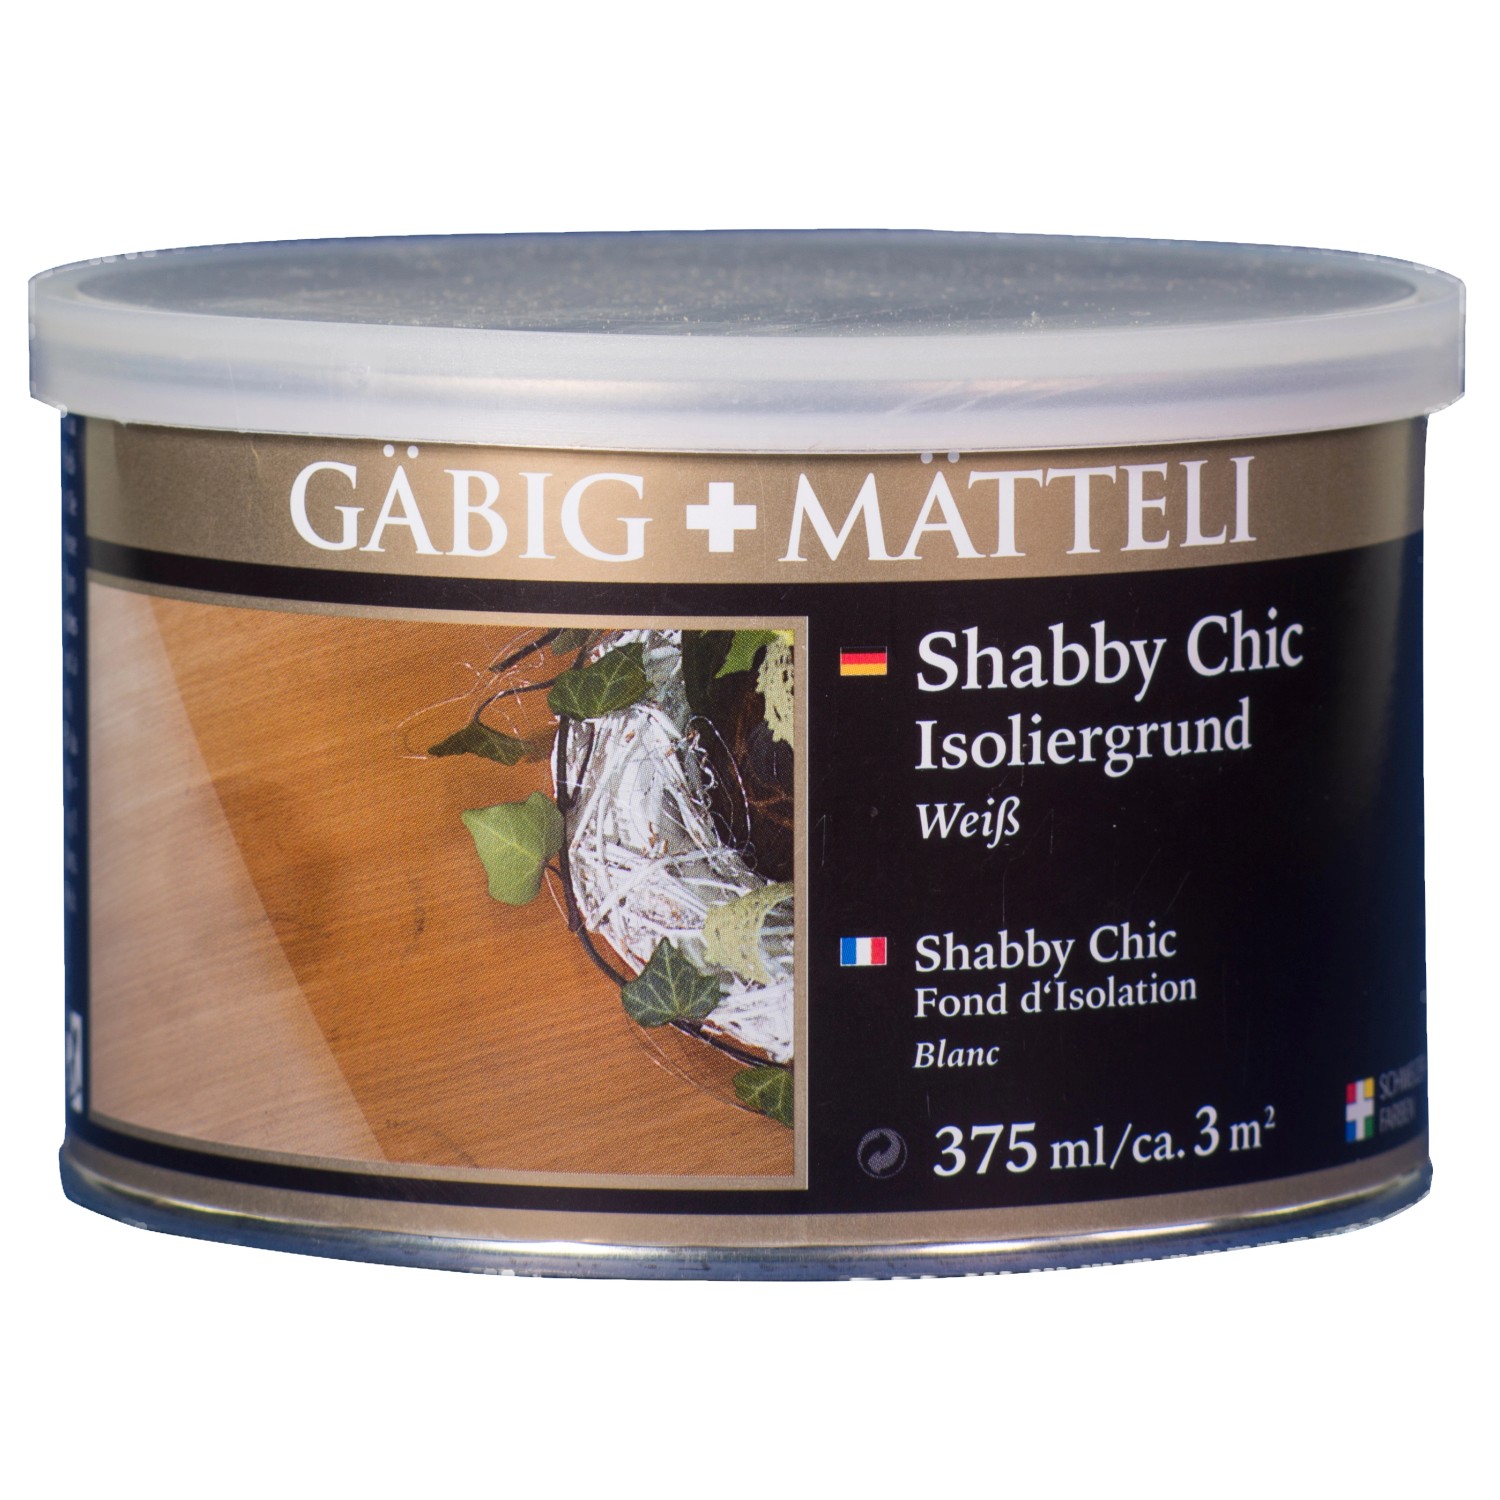 Gäbig+Mätteli Shabby Chic Isoliergrund weiß 375 ml von Gäbig+Mätteli